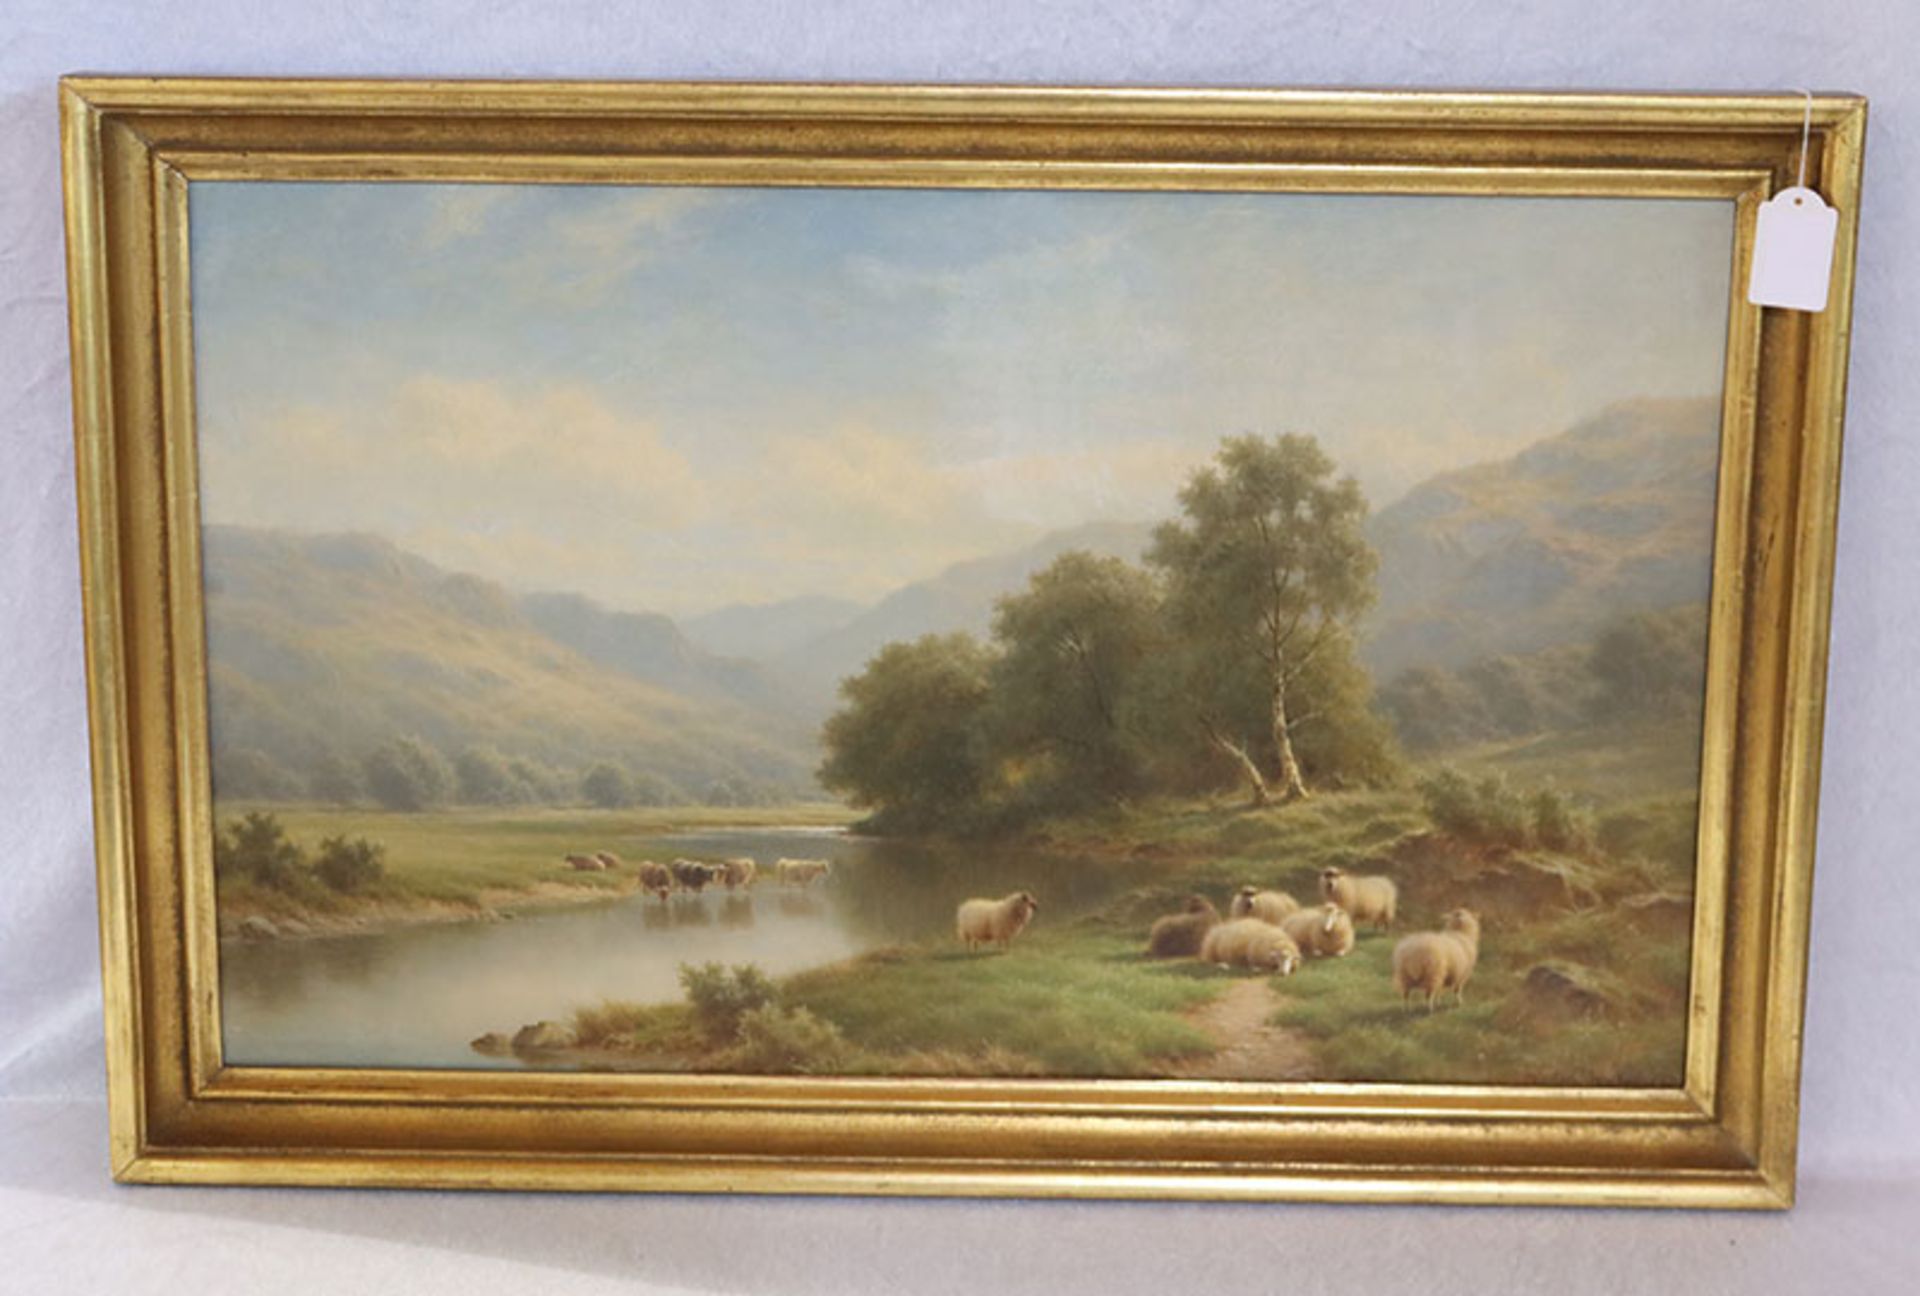 Gemälde ÖL/LW 'Englische Landschafts-Szenerie mit Schafen und Kühen', signiert Walter Watson 1927, *